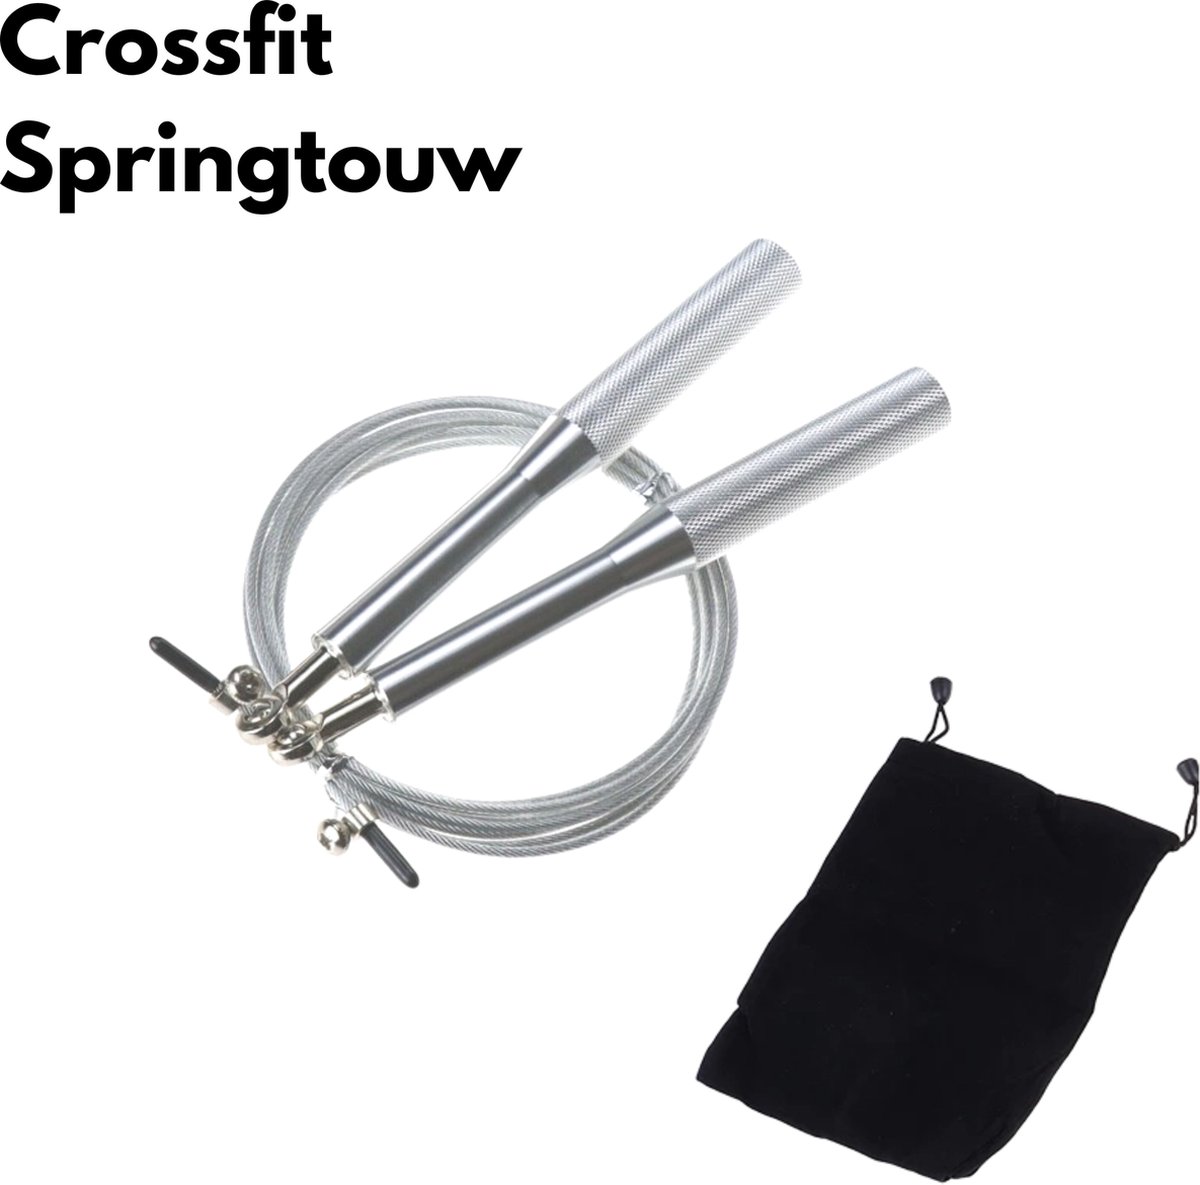 Springtouw volwassenen|Springtouw|Speed Rope|Speed rope|Crossfit|Touwtje springen|Verstelbaar|Kogellager|ZILVER